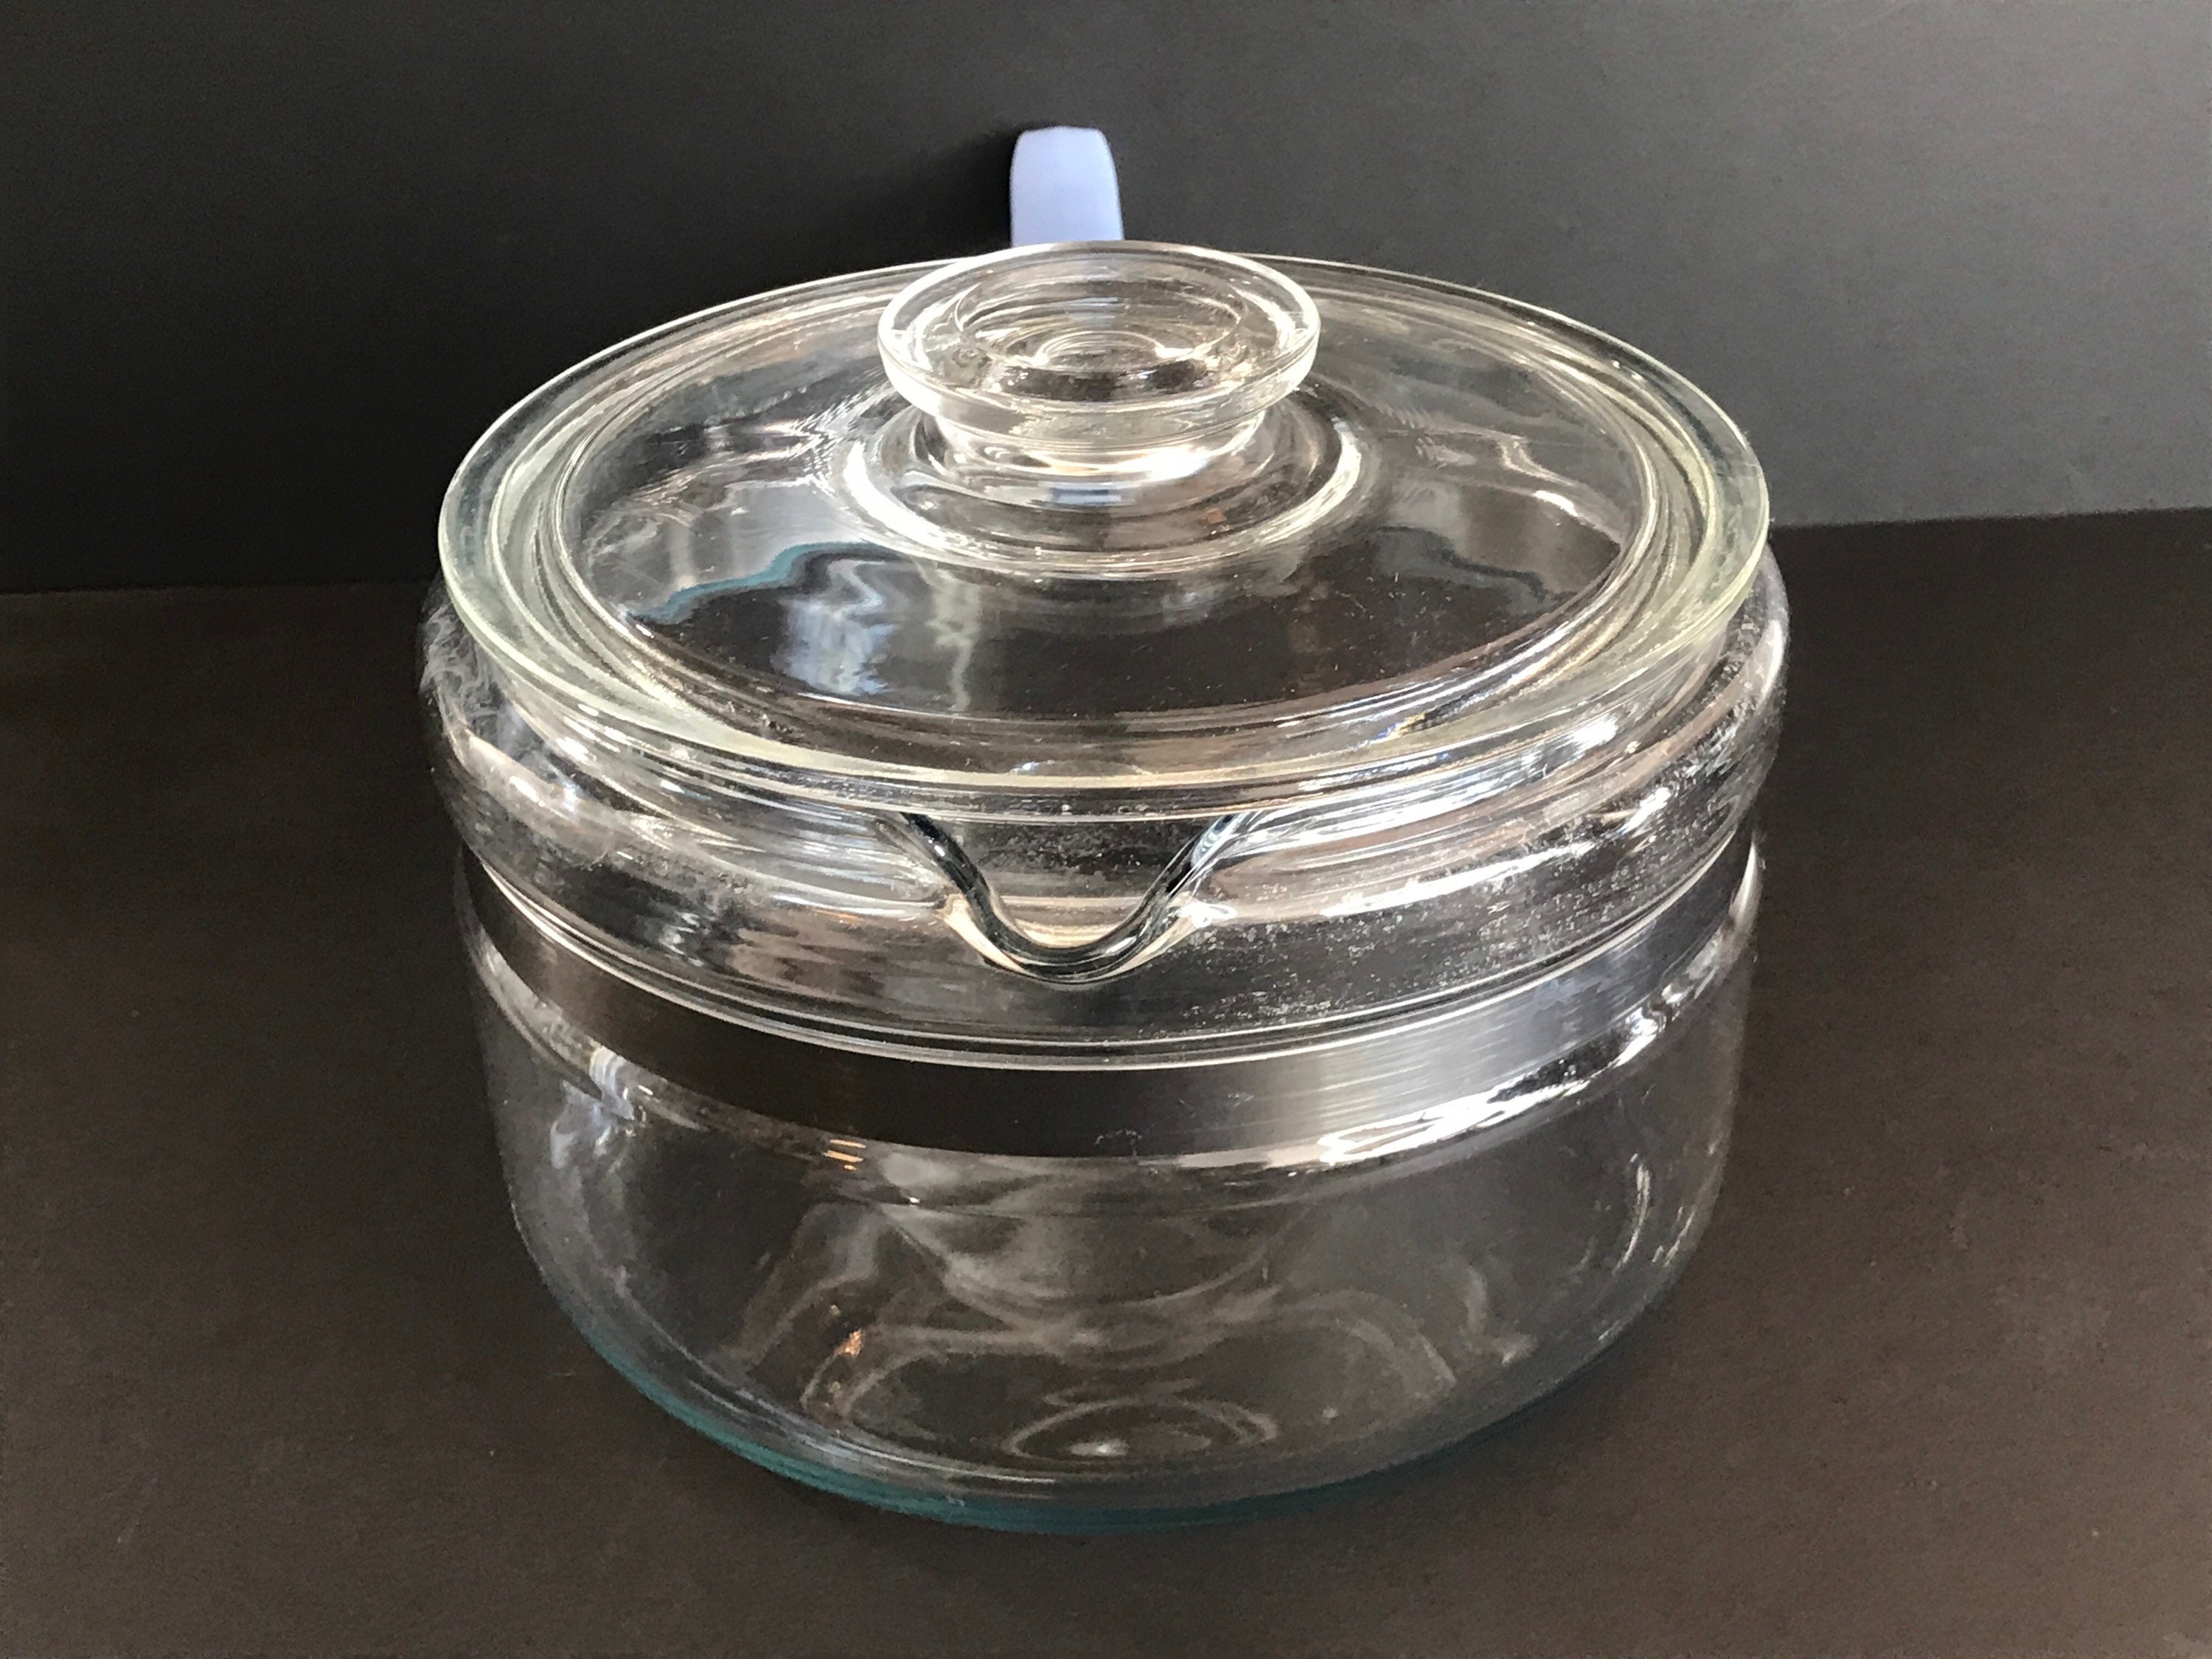 Vintage Pyrex Glass #6213 1-1/2 qt. Covered Sauce Pot